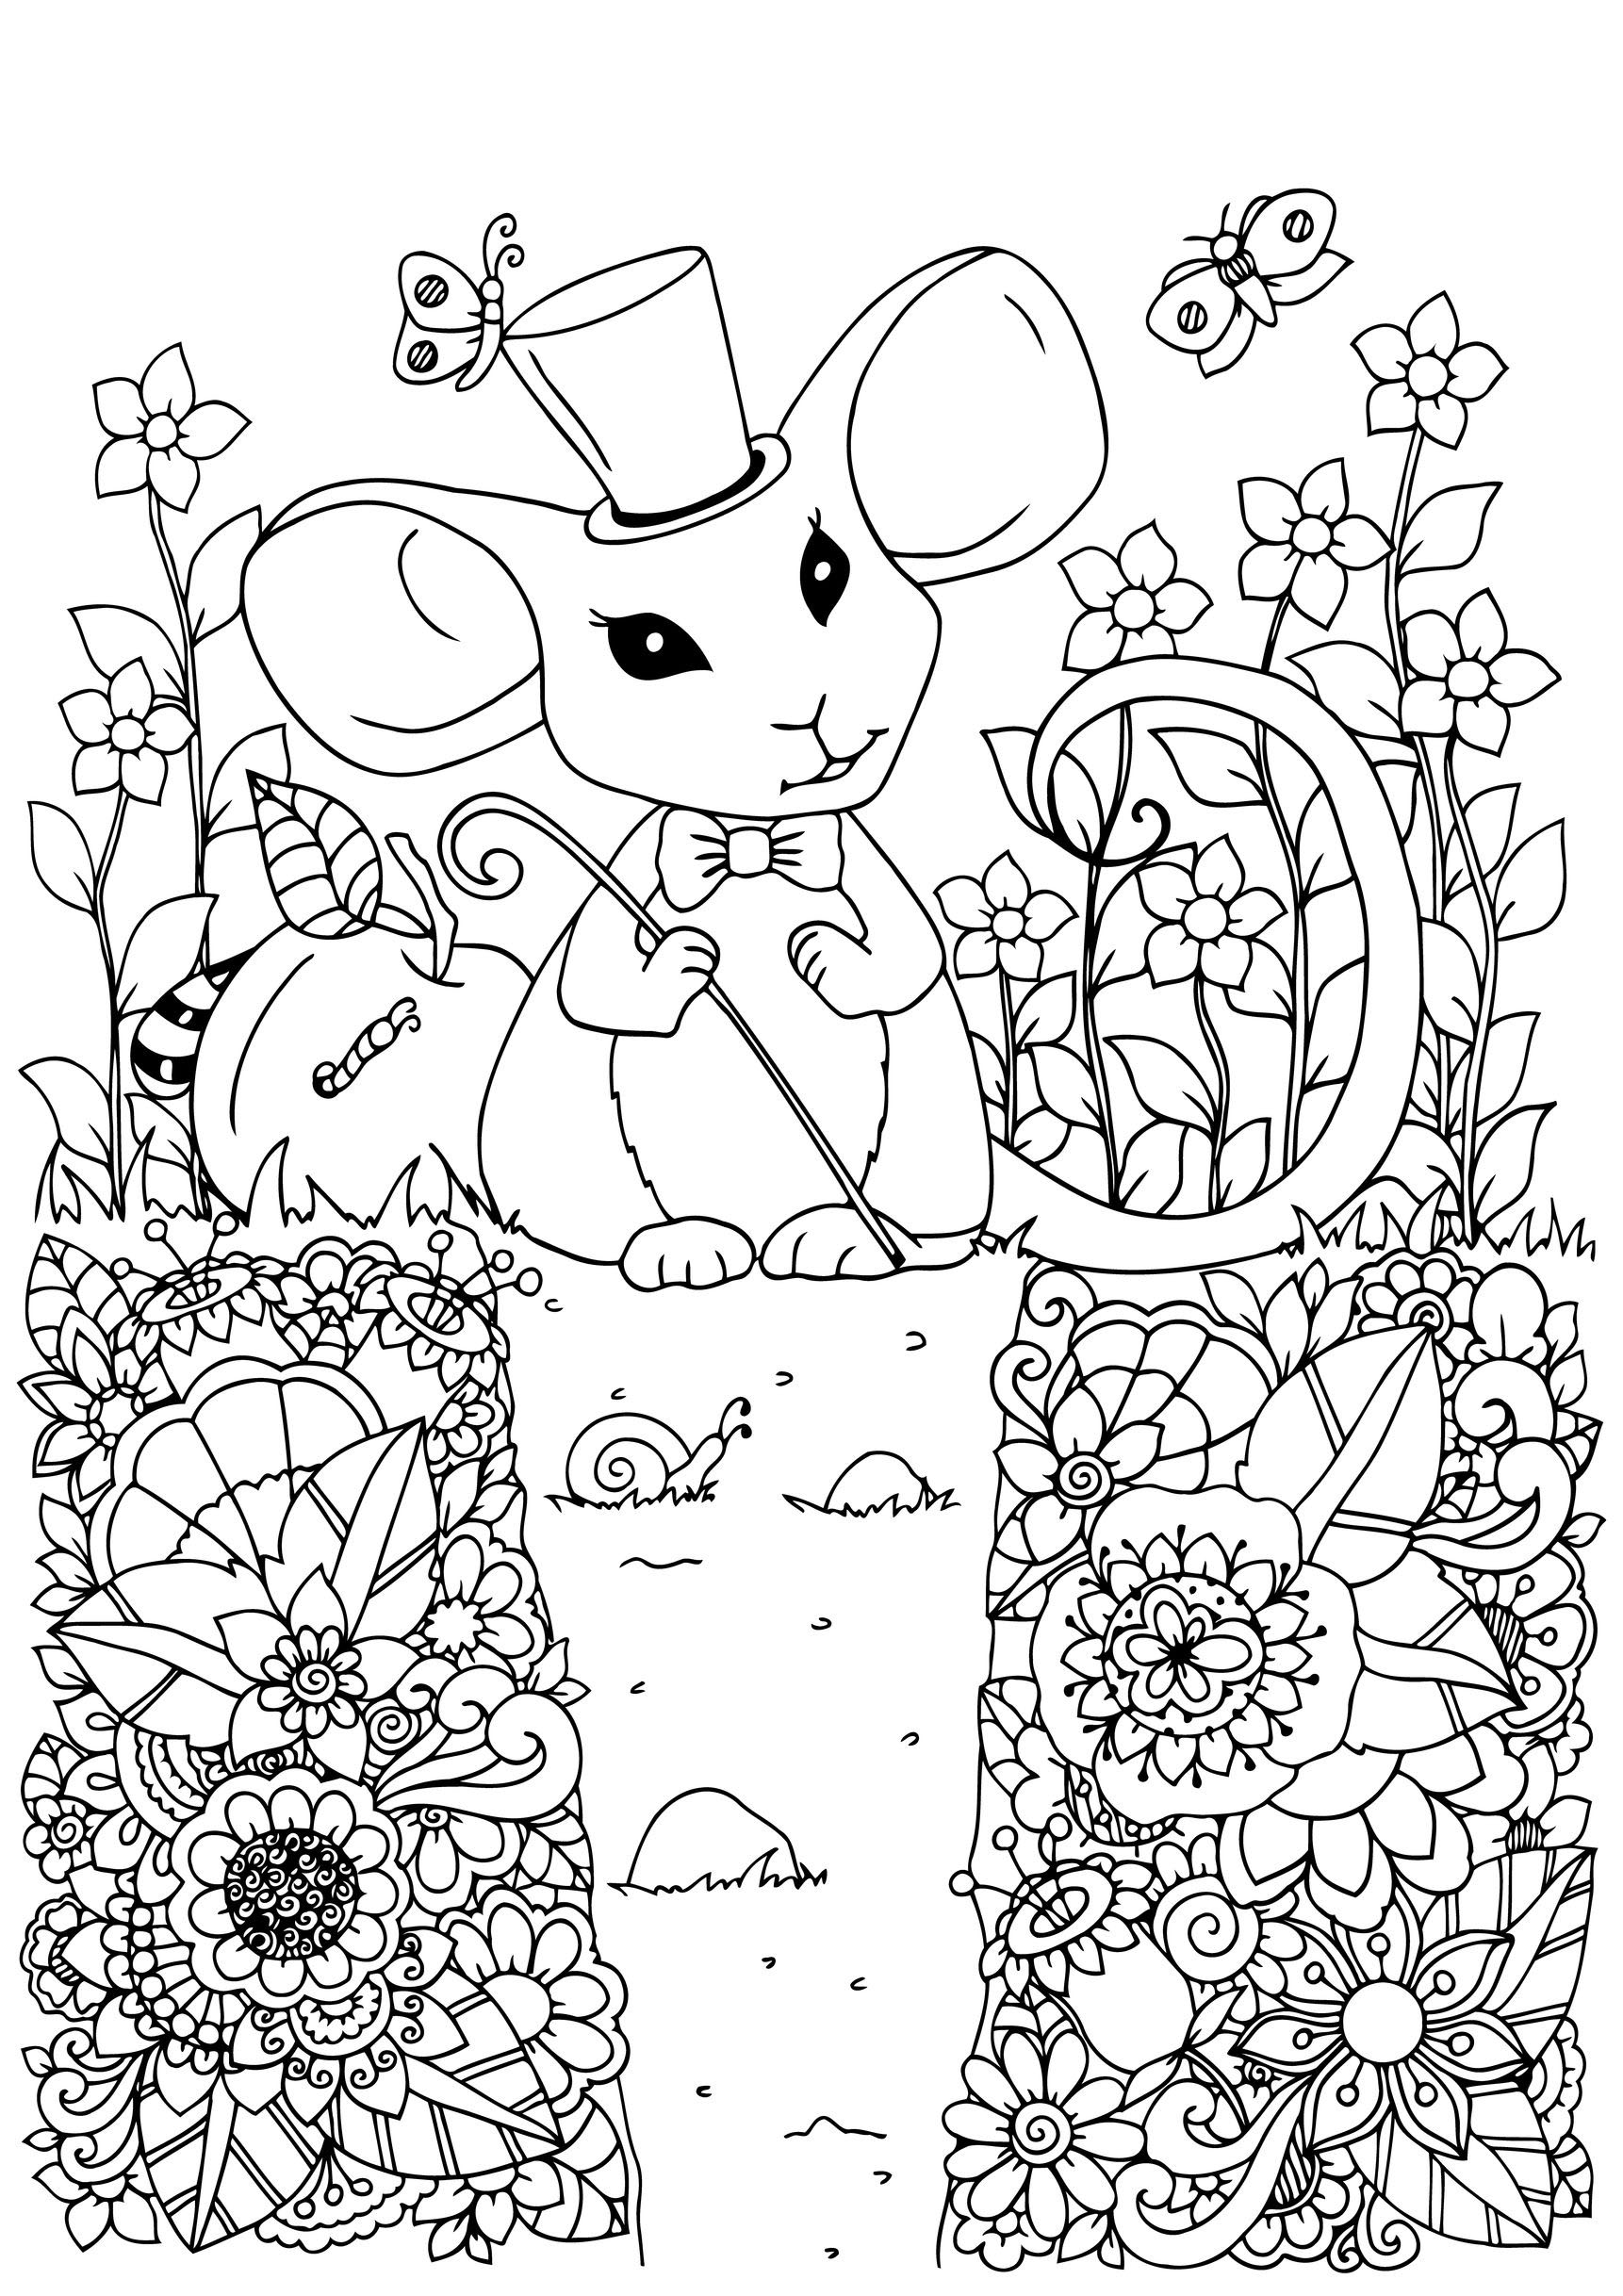 Ratón lindo con su sombrero de mago en un jardín lleno de hermosas flores, Origen : 123rf   Artista : Tanvetka